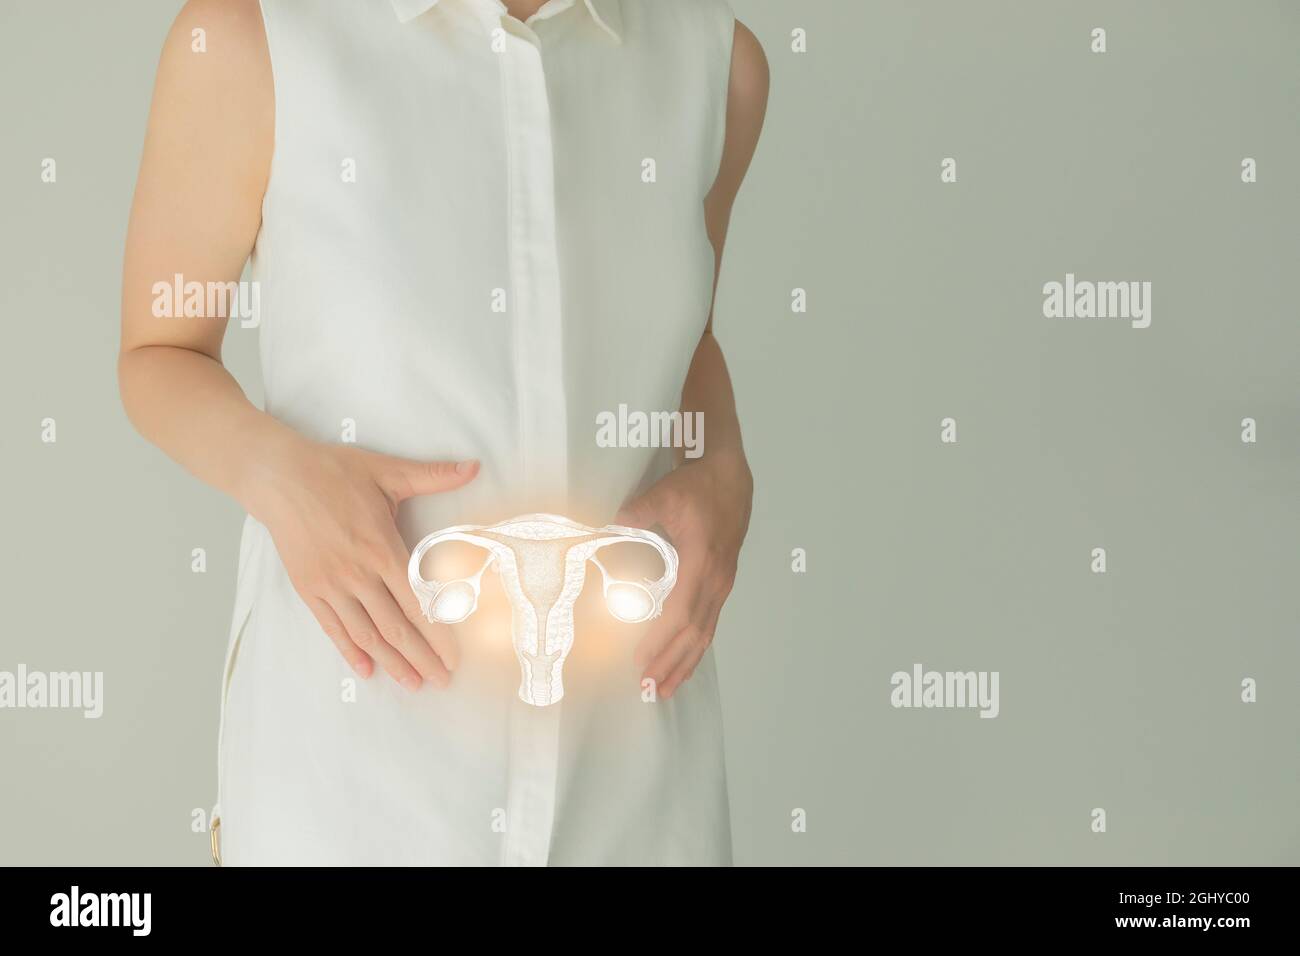 Paziente femminile irriconoscibile in abiti bianchi, evidenziato utero di mano nelle mani. Concetto di problemi del sistema riproduttivo umano. Foto Stock